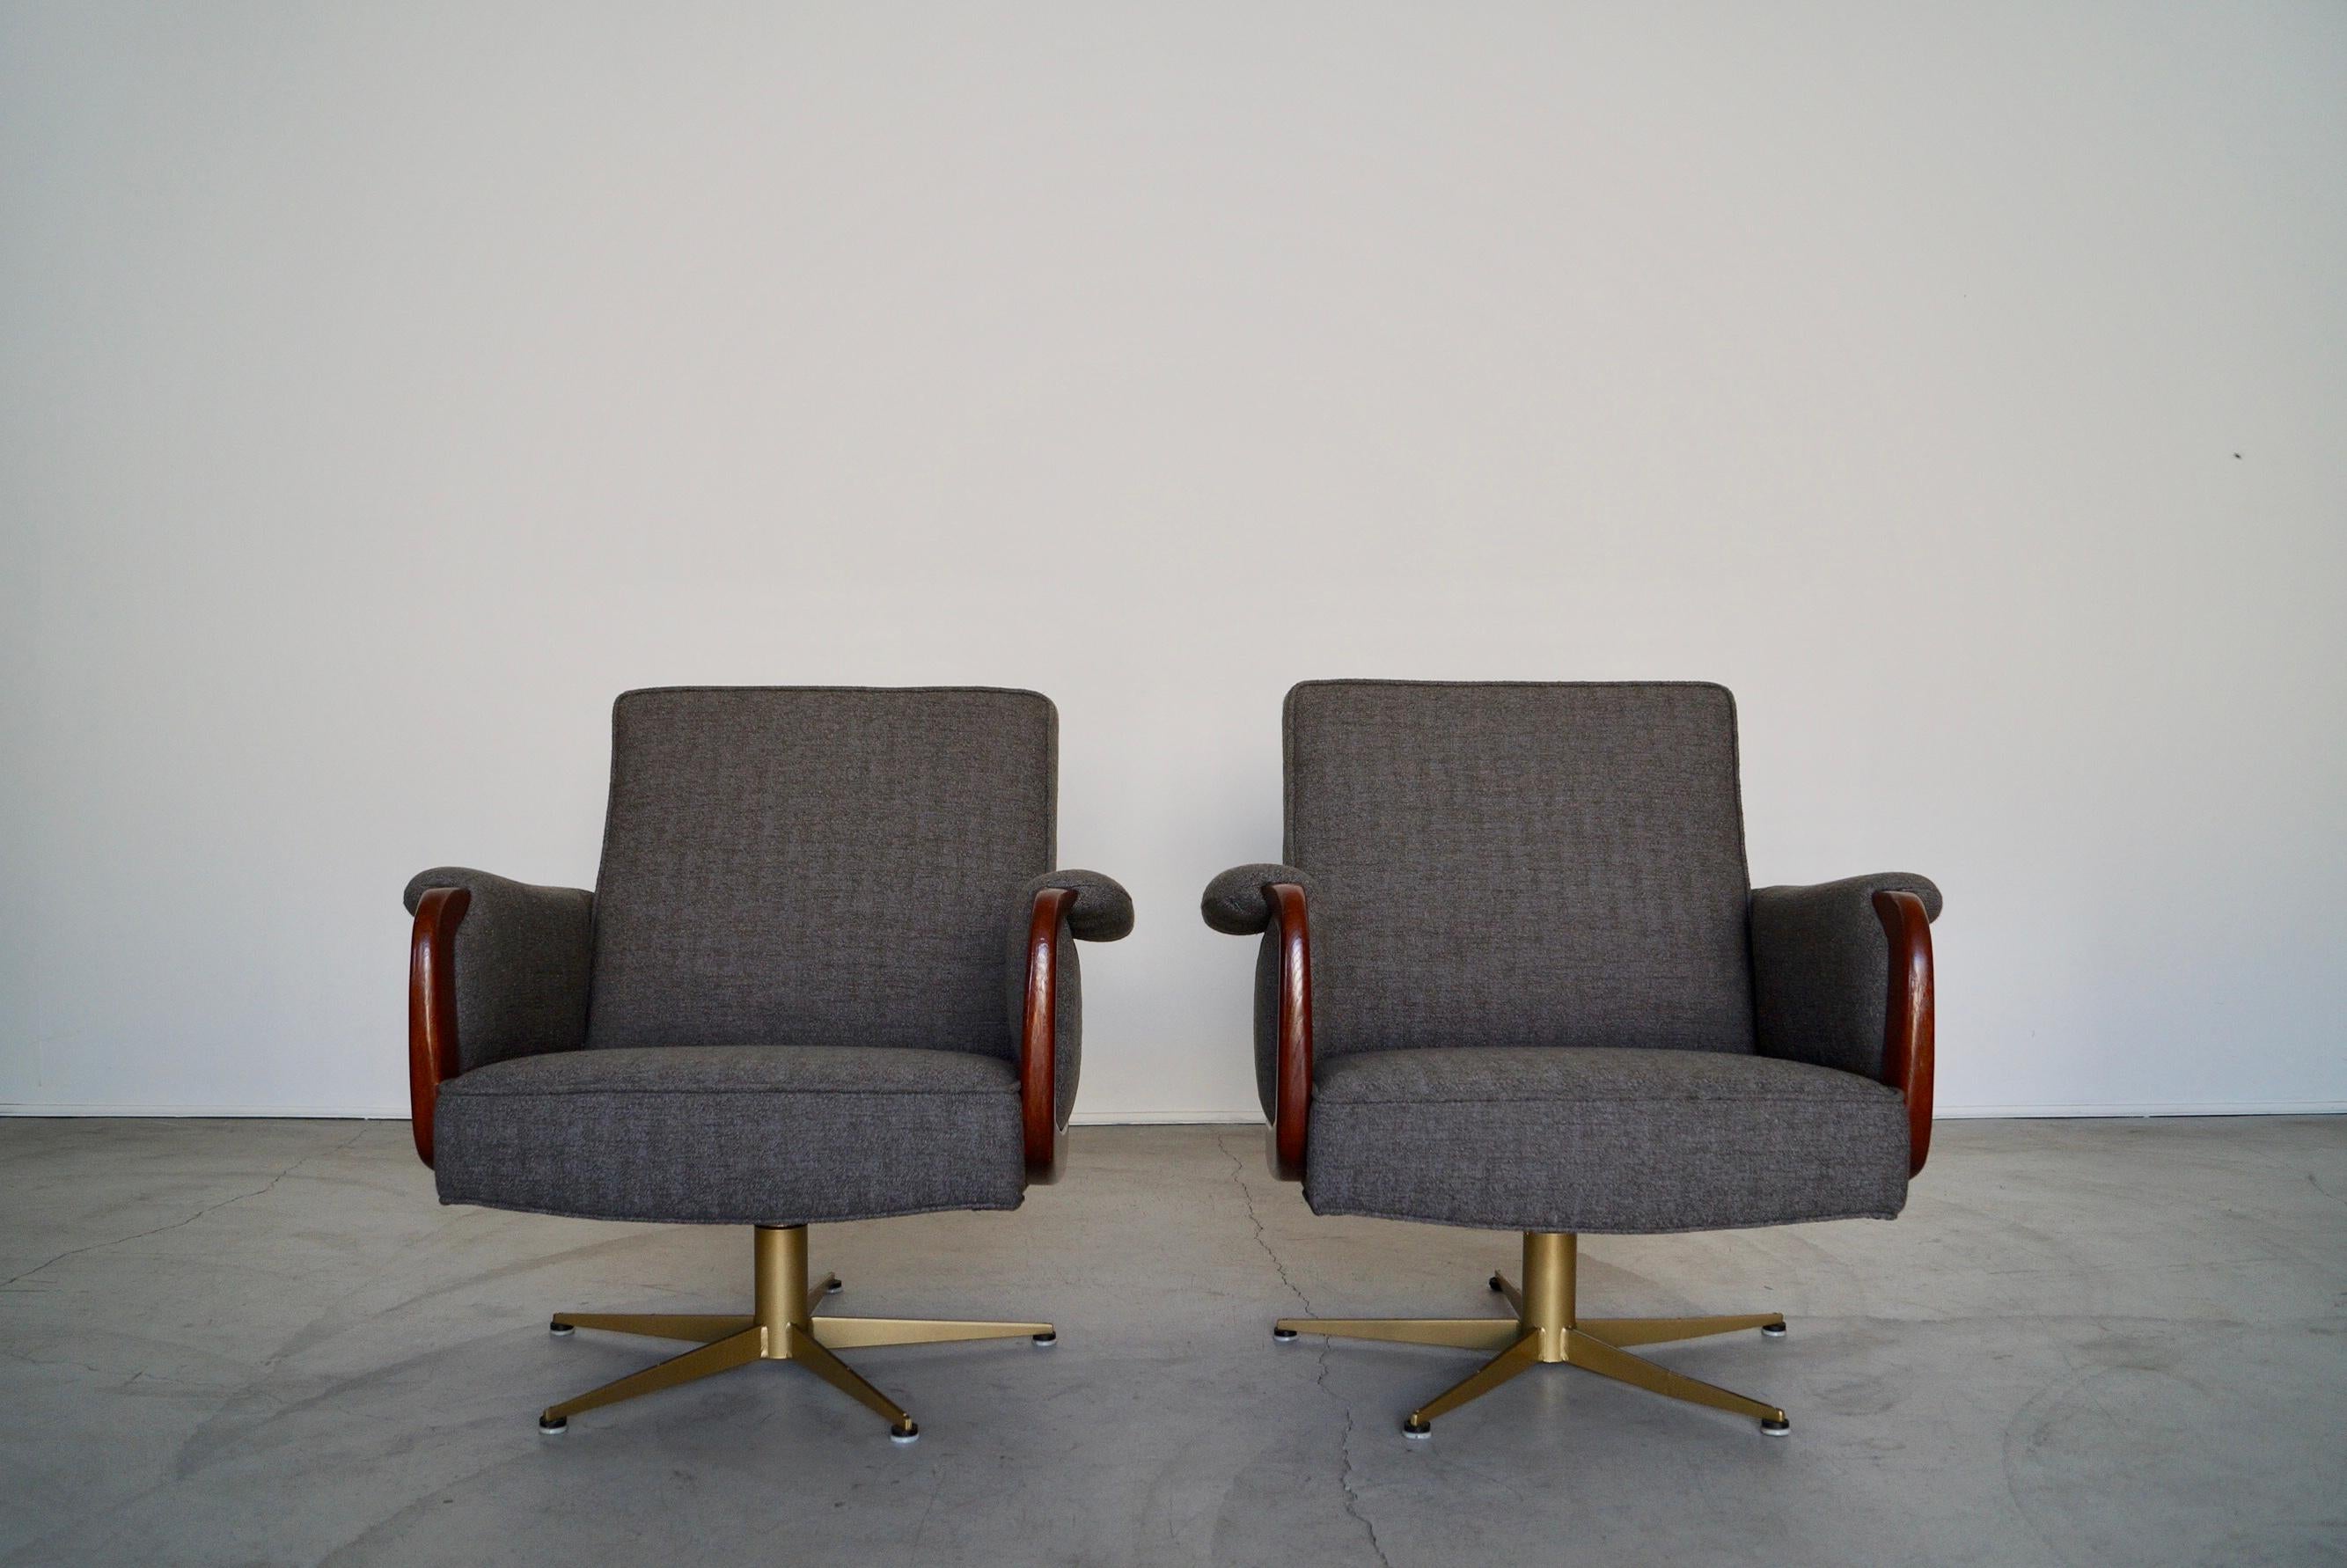 Mid-century Modern Lounge Stühle zu verkaufen. Sie wurden vollständig restauriert und sehen jetzt wieder unglaublich gut aus. Sie haben einen sternförmigen Sockel, der professionell sandgestrahlt und mit einer goldenen Messingoberfläche